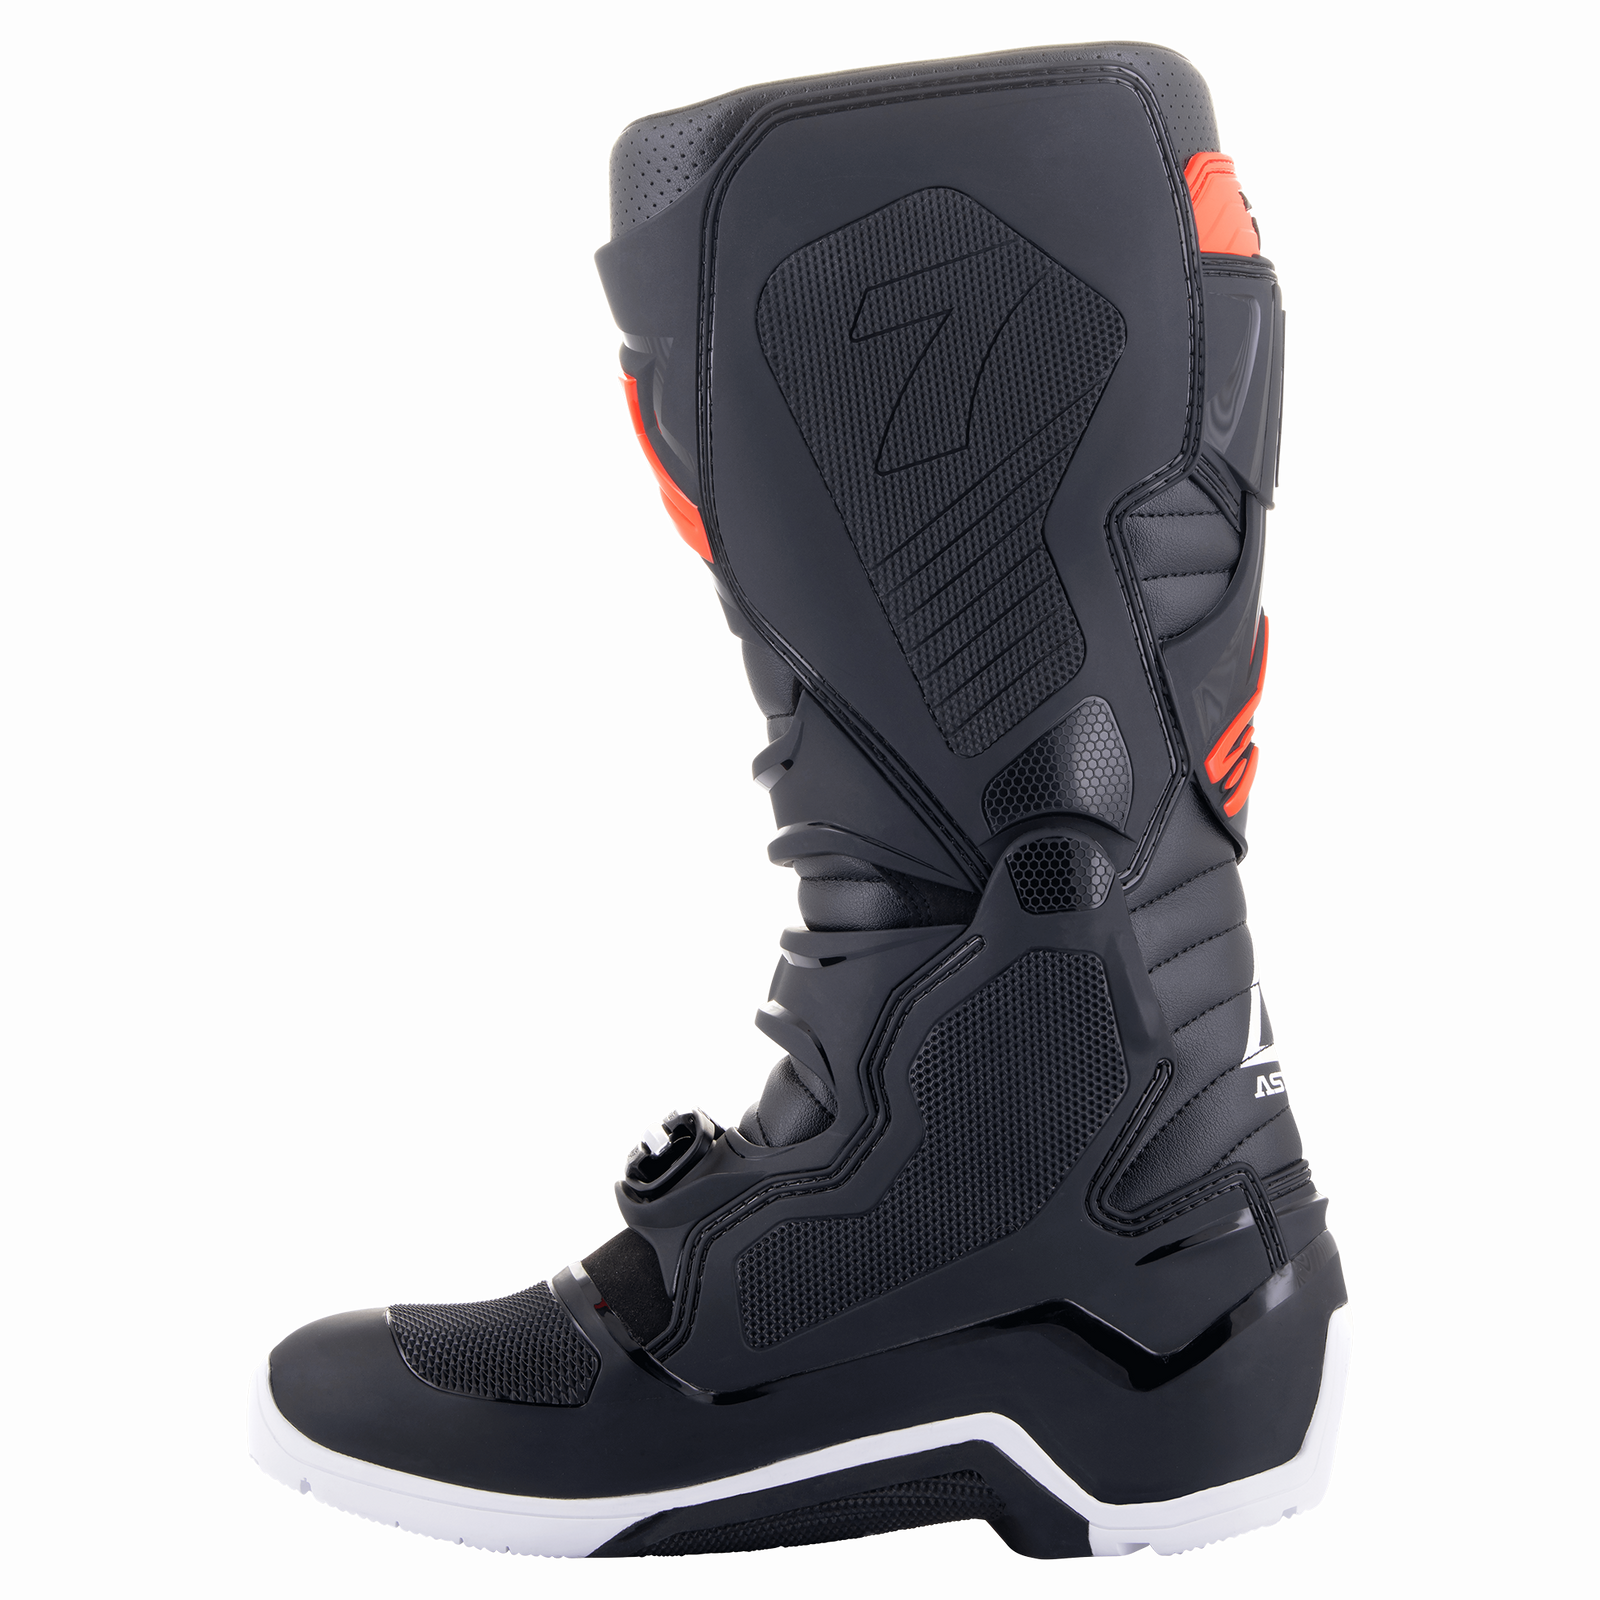 Tech 7 Enduro Boots